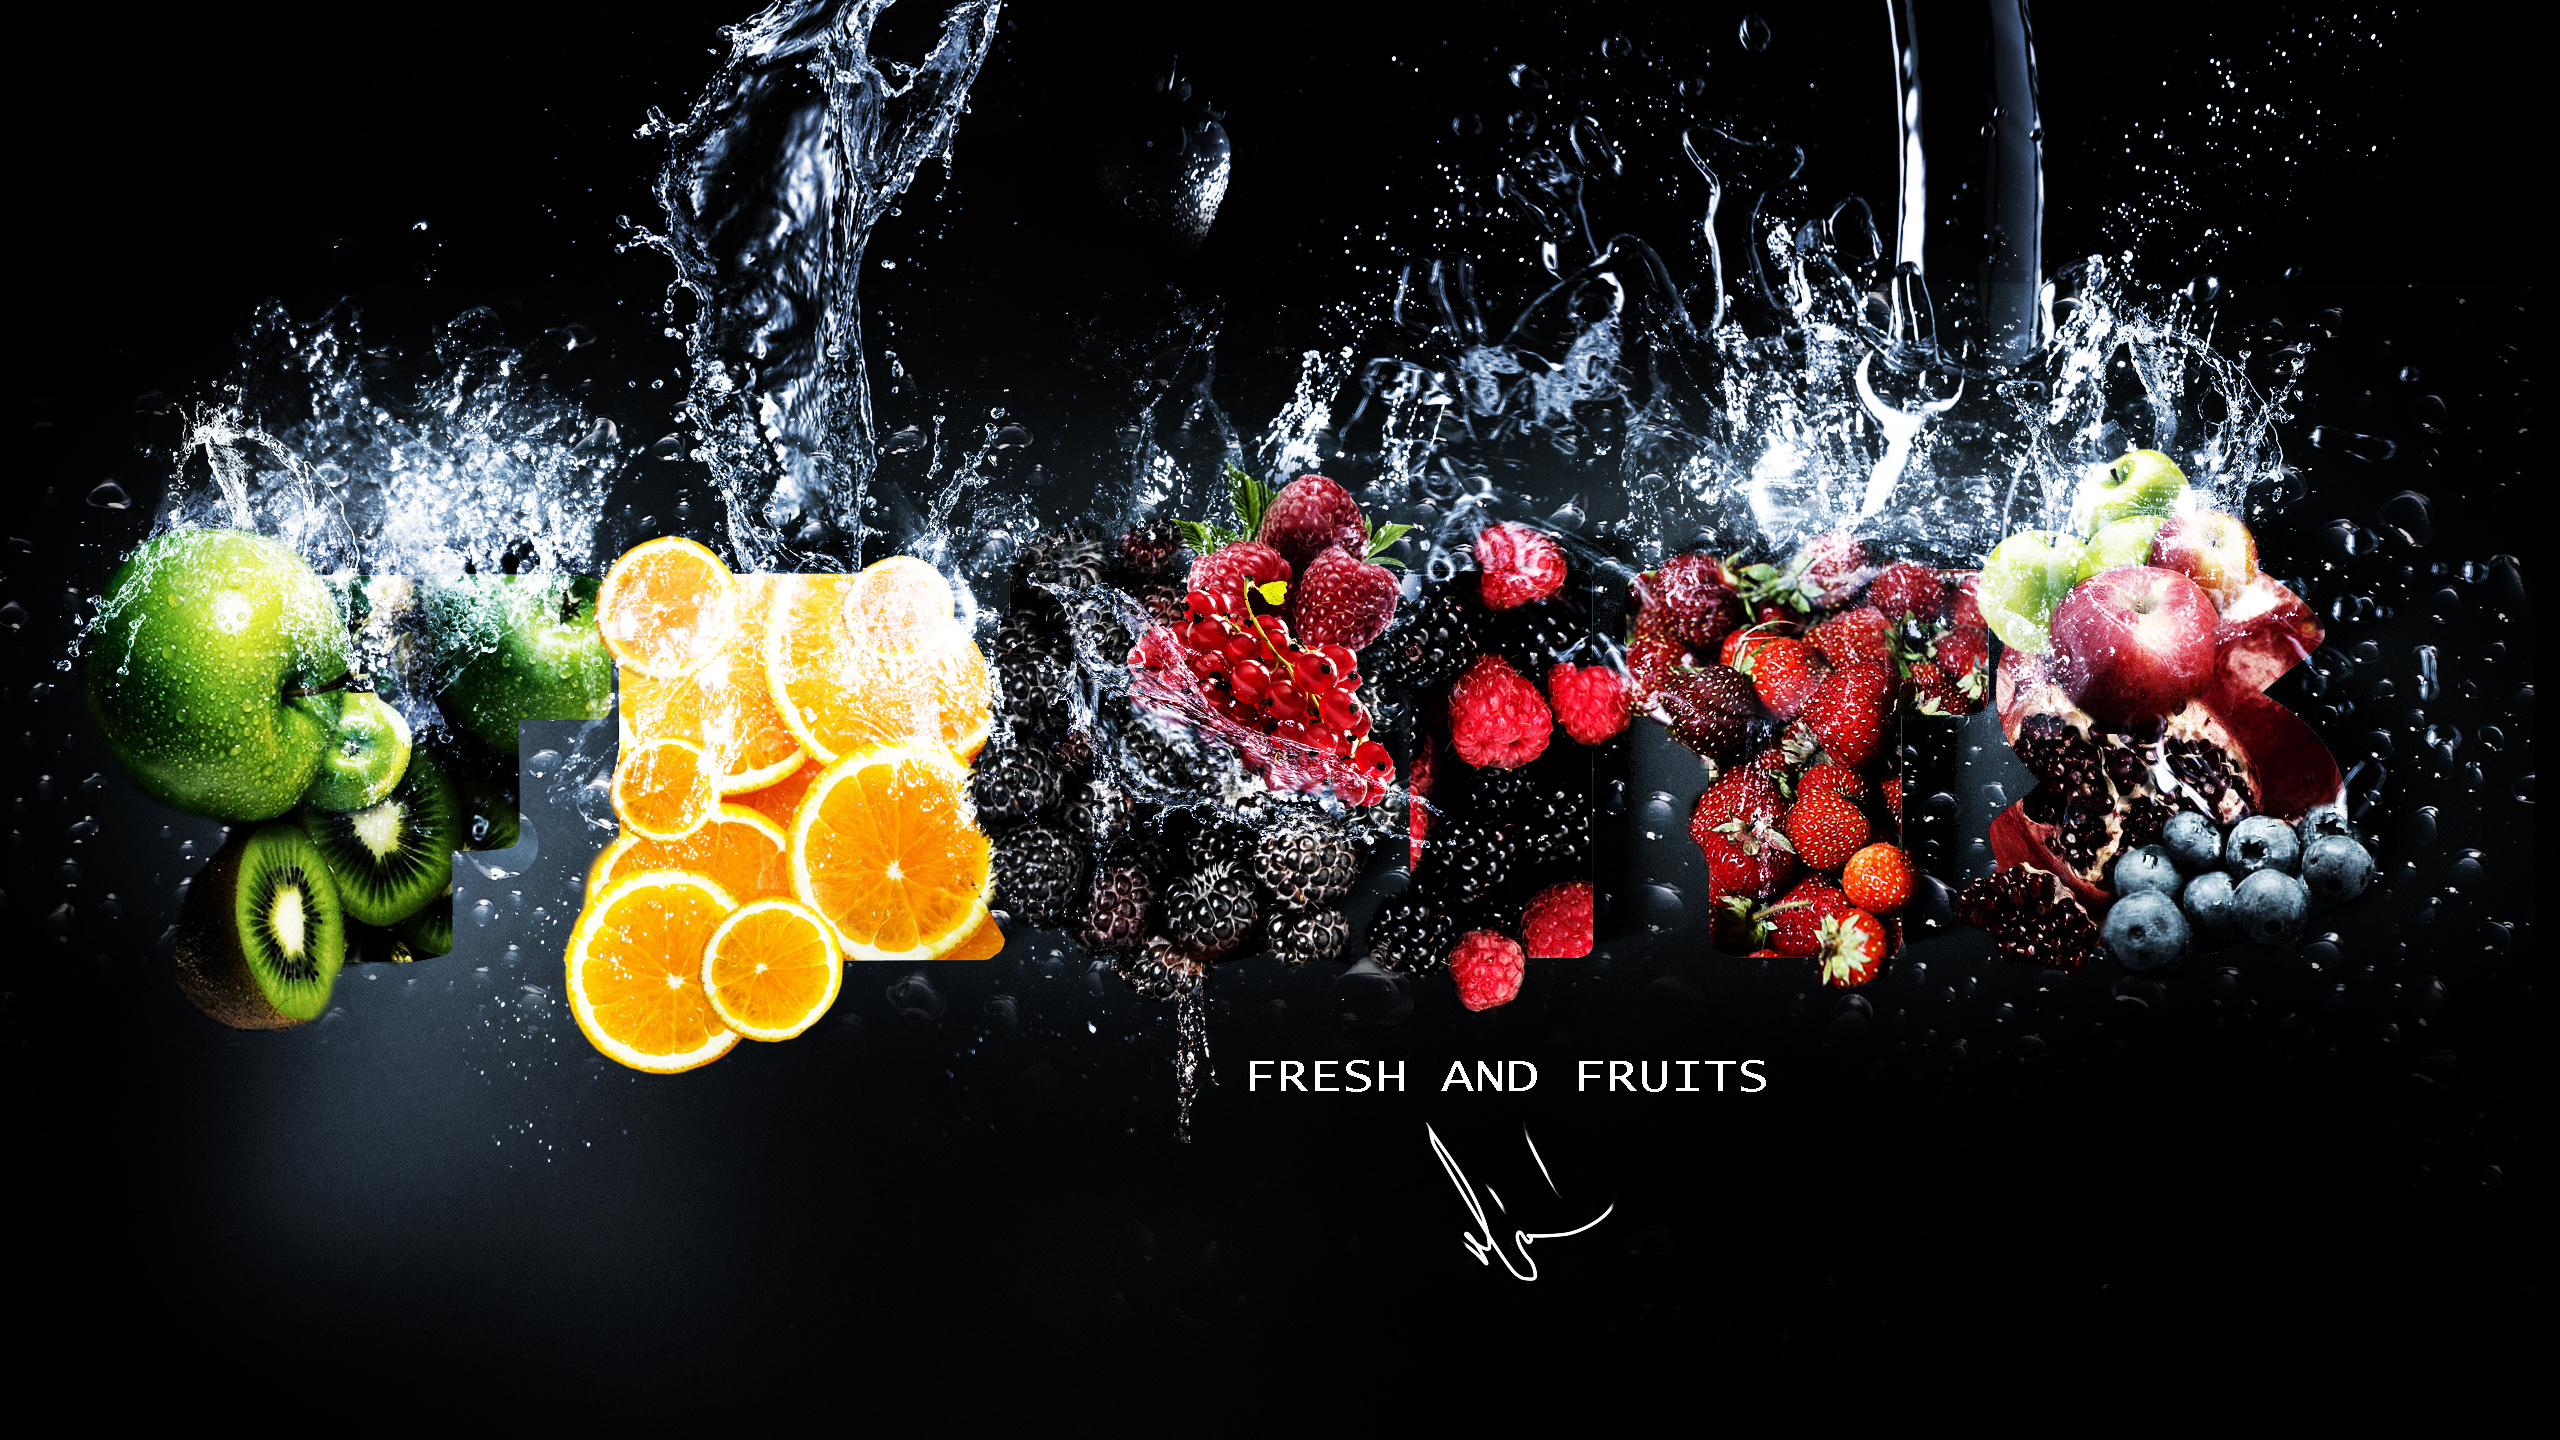 과일 벽지,과일,식물,음식,정물 사진,주황색